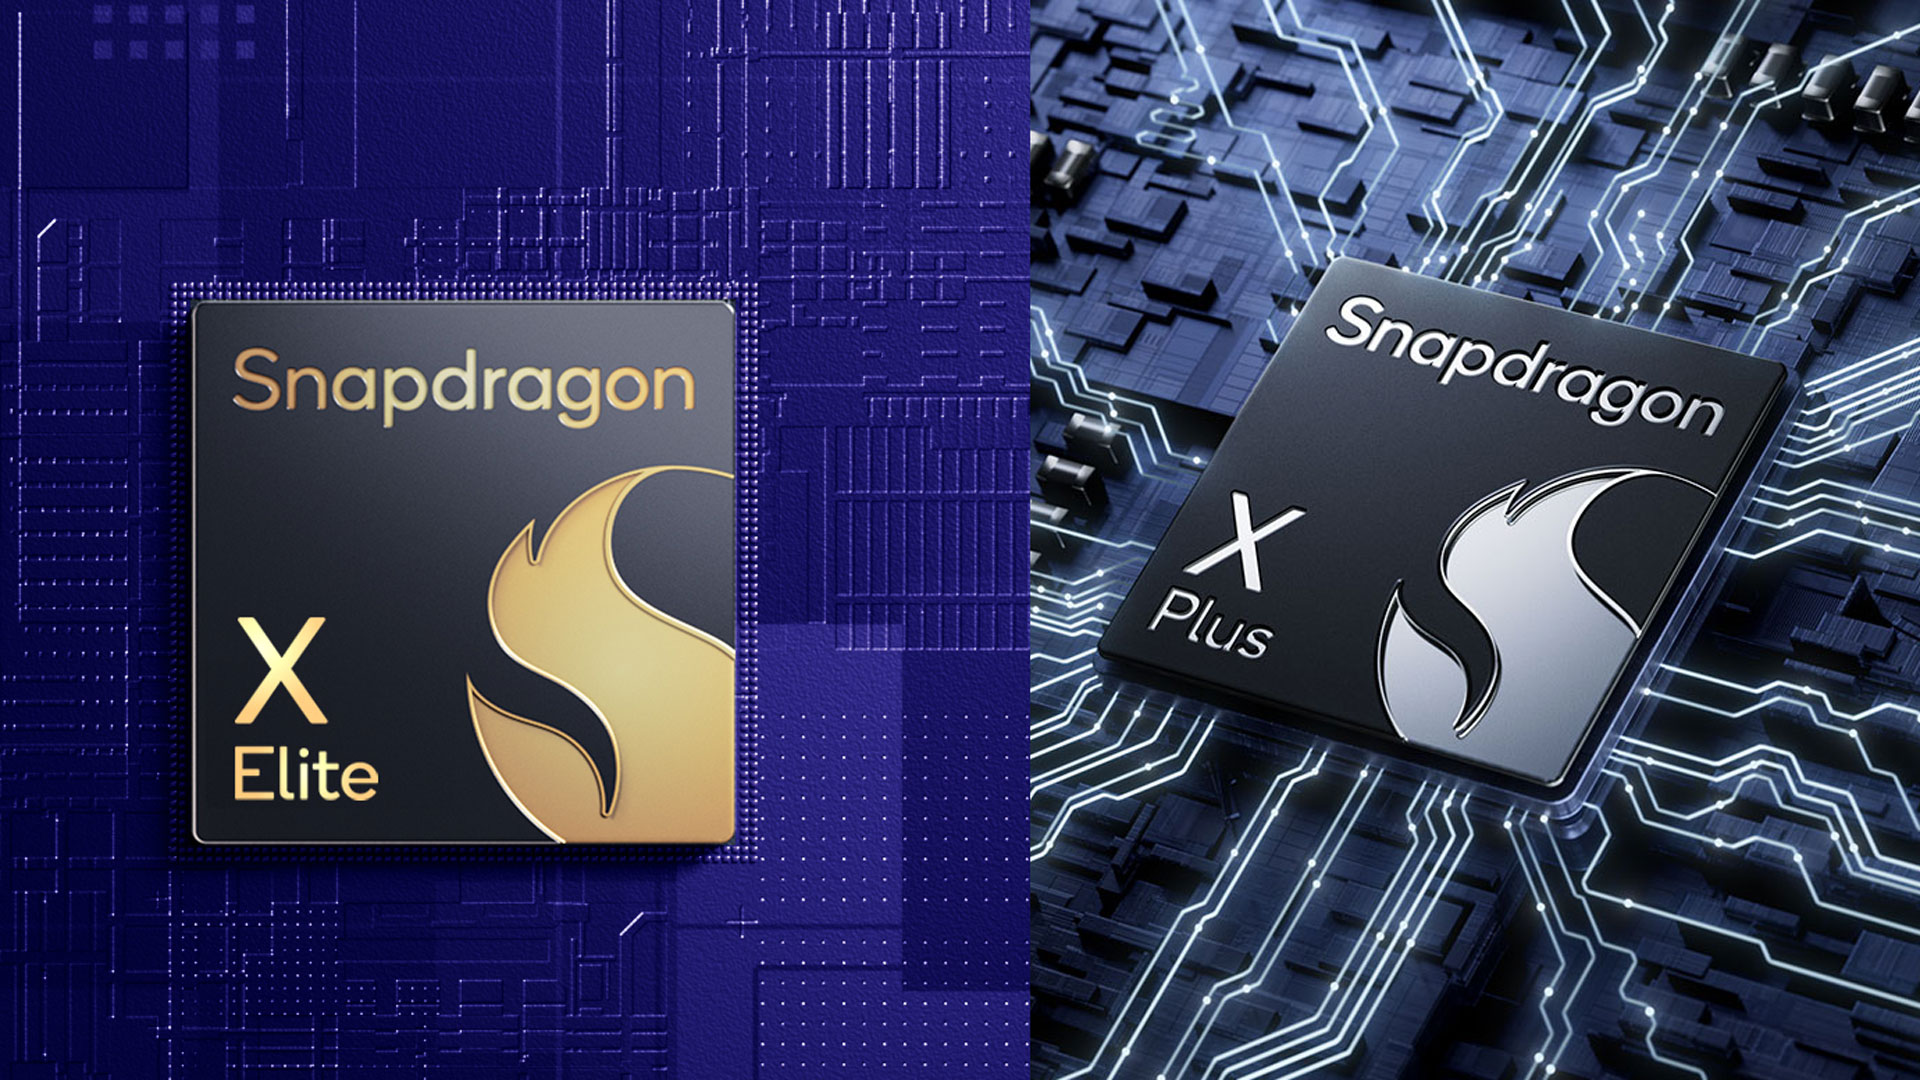 Snapdragon X Plus - Sự cân bằng giữa hiệu năng và giá thành (Ảnh: Internet)